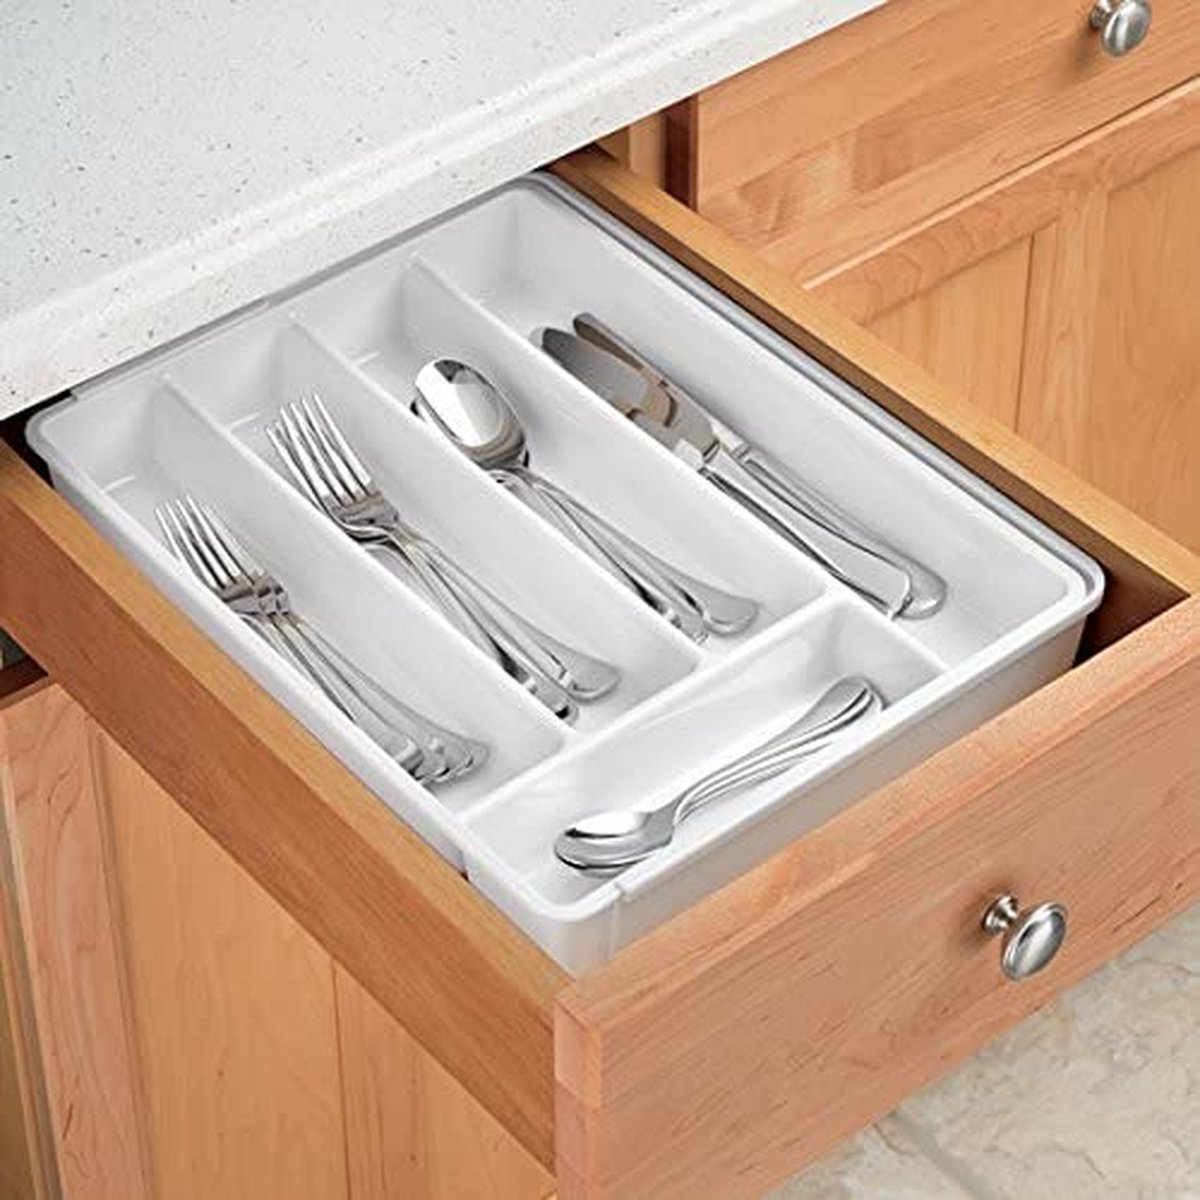 mDesign - Keukenlade-organizer - lade-indeler/bestekbak - met meerdere vakken - aanpasbaar/uitschuifbaar - voor lades en oppervlakken - Wit